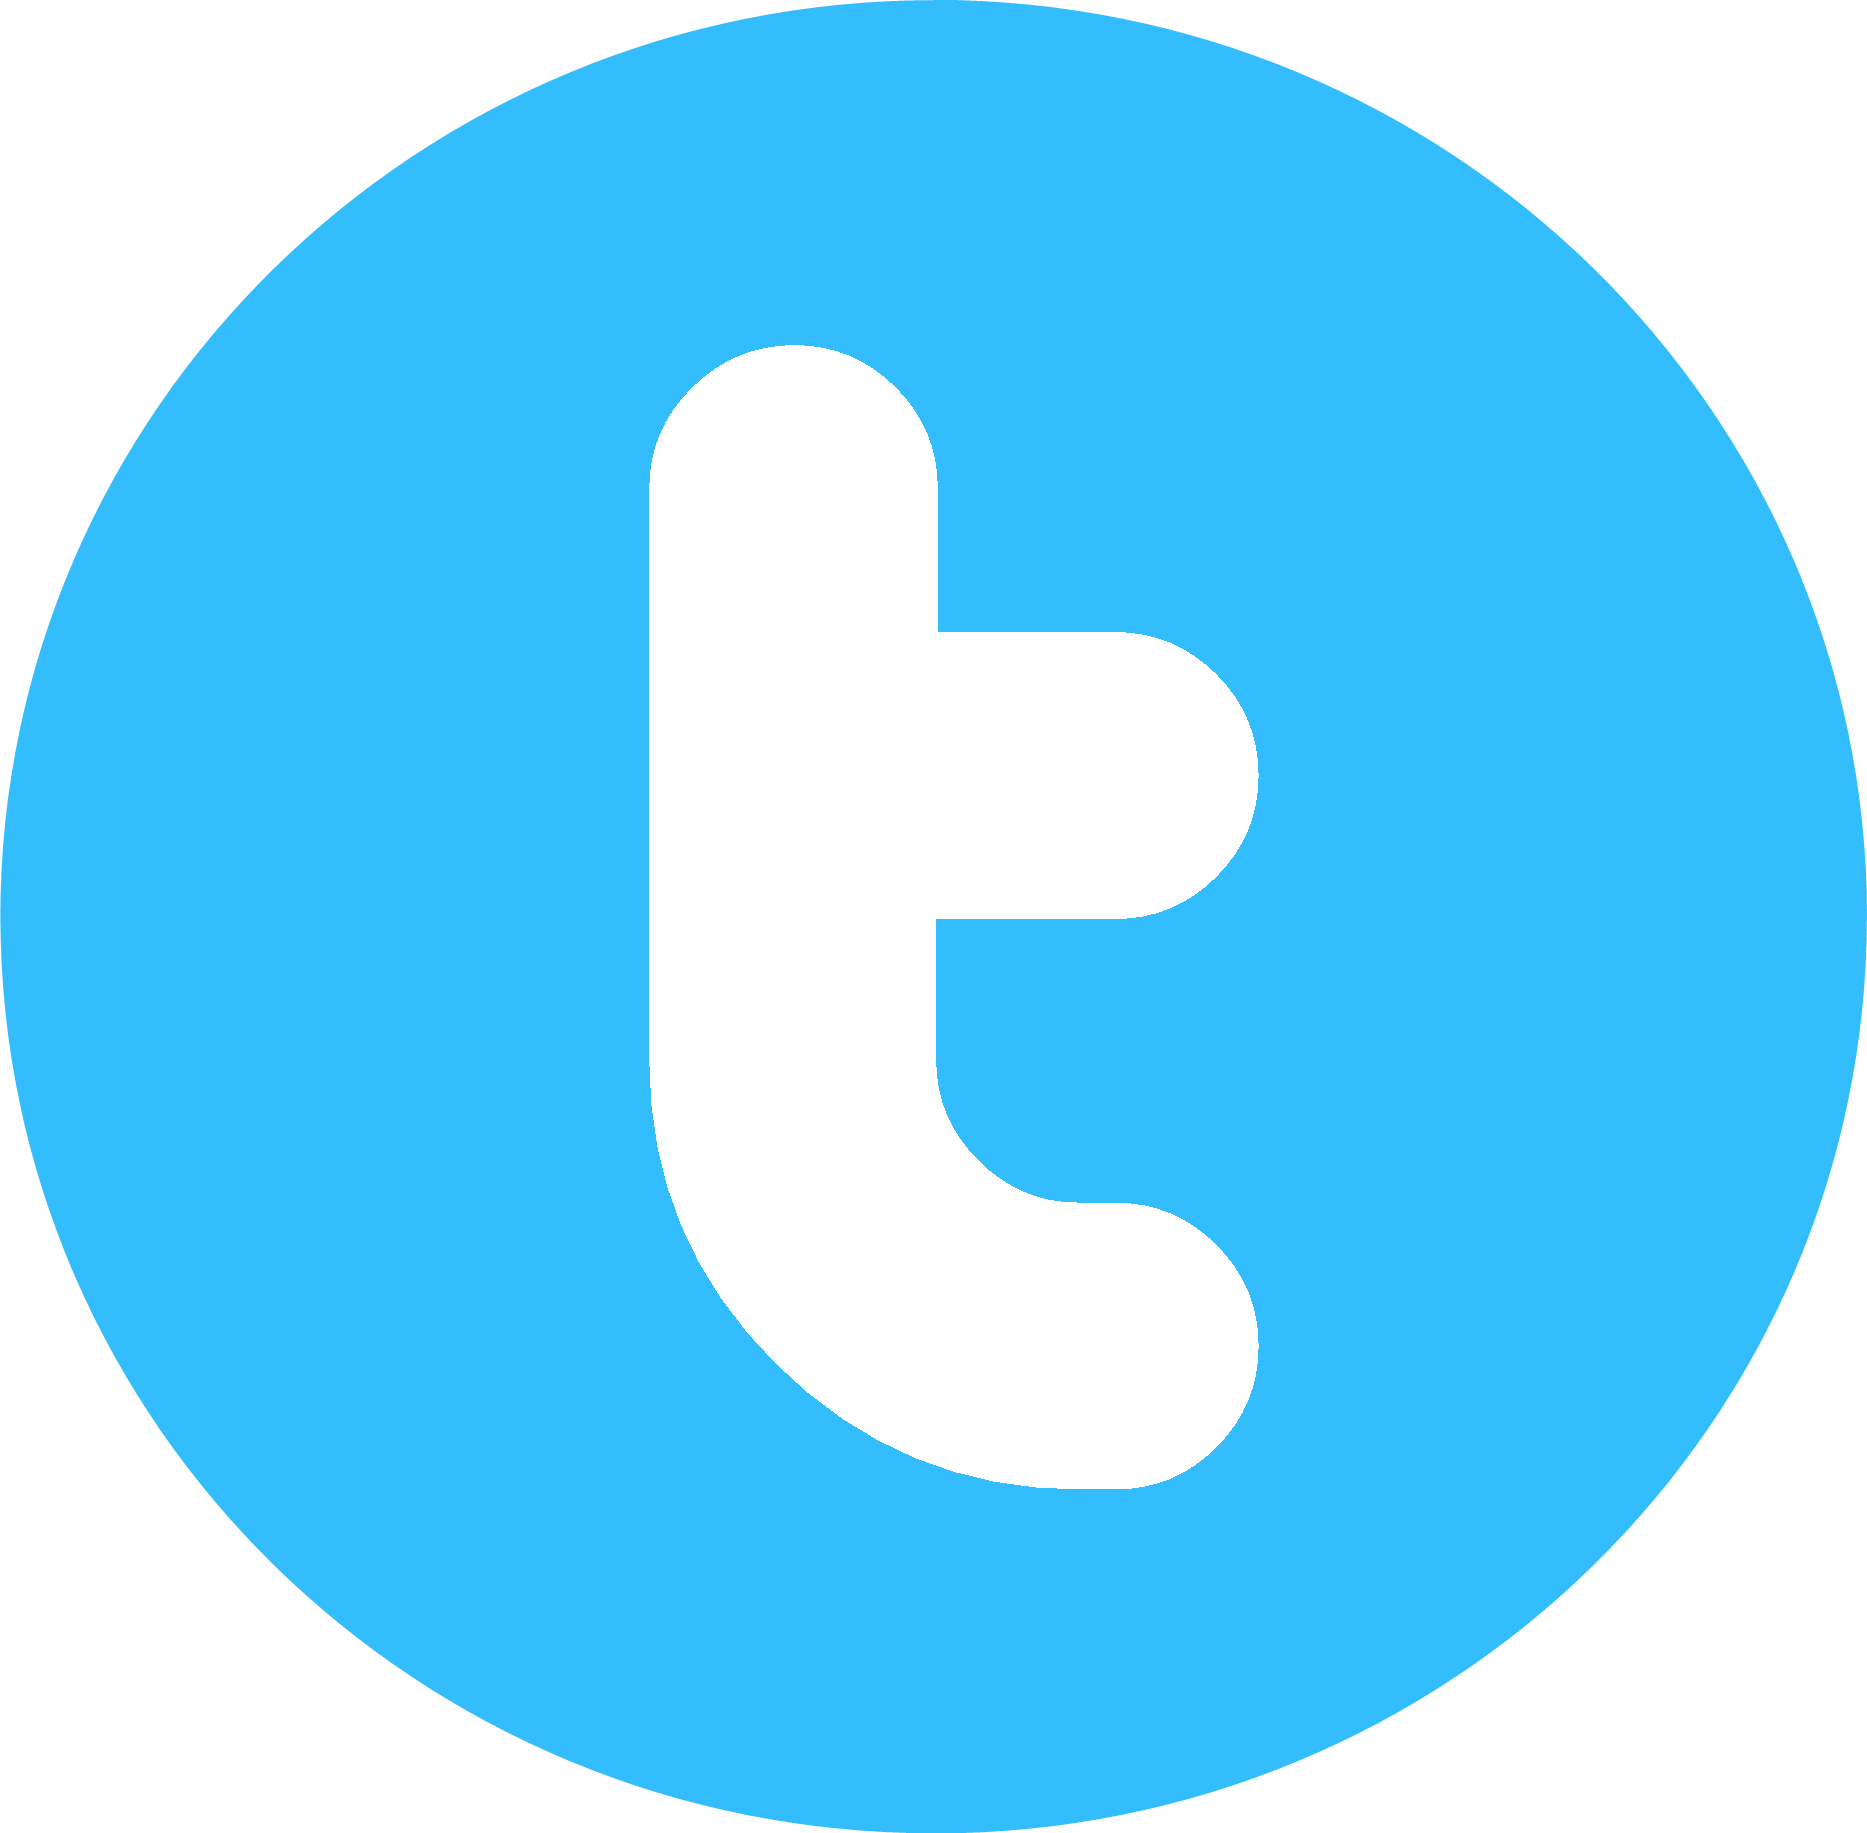 Twitter Round Logo Wallpaper